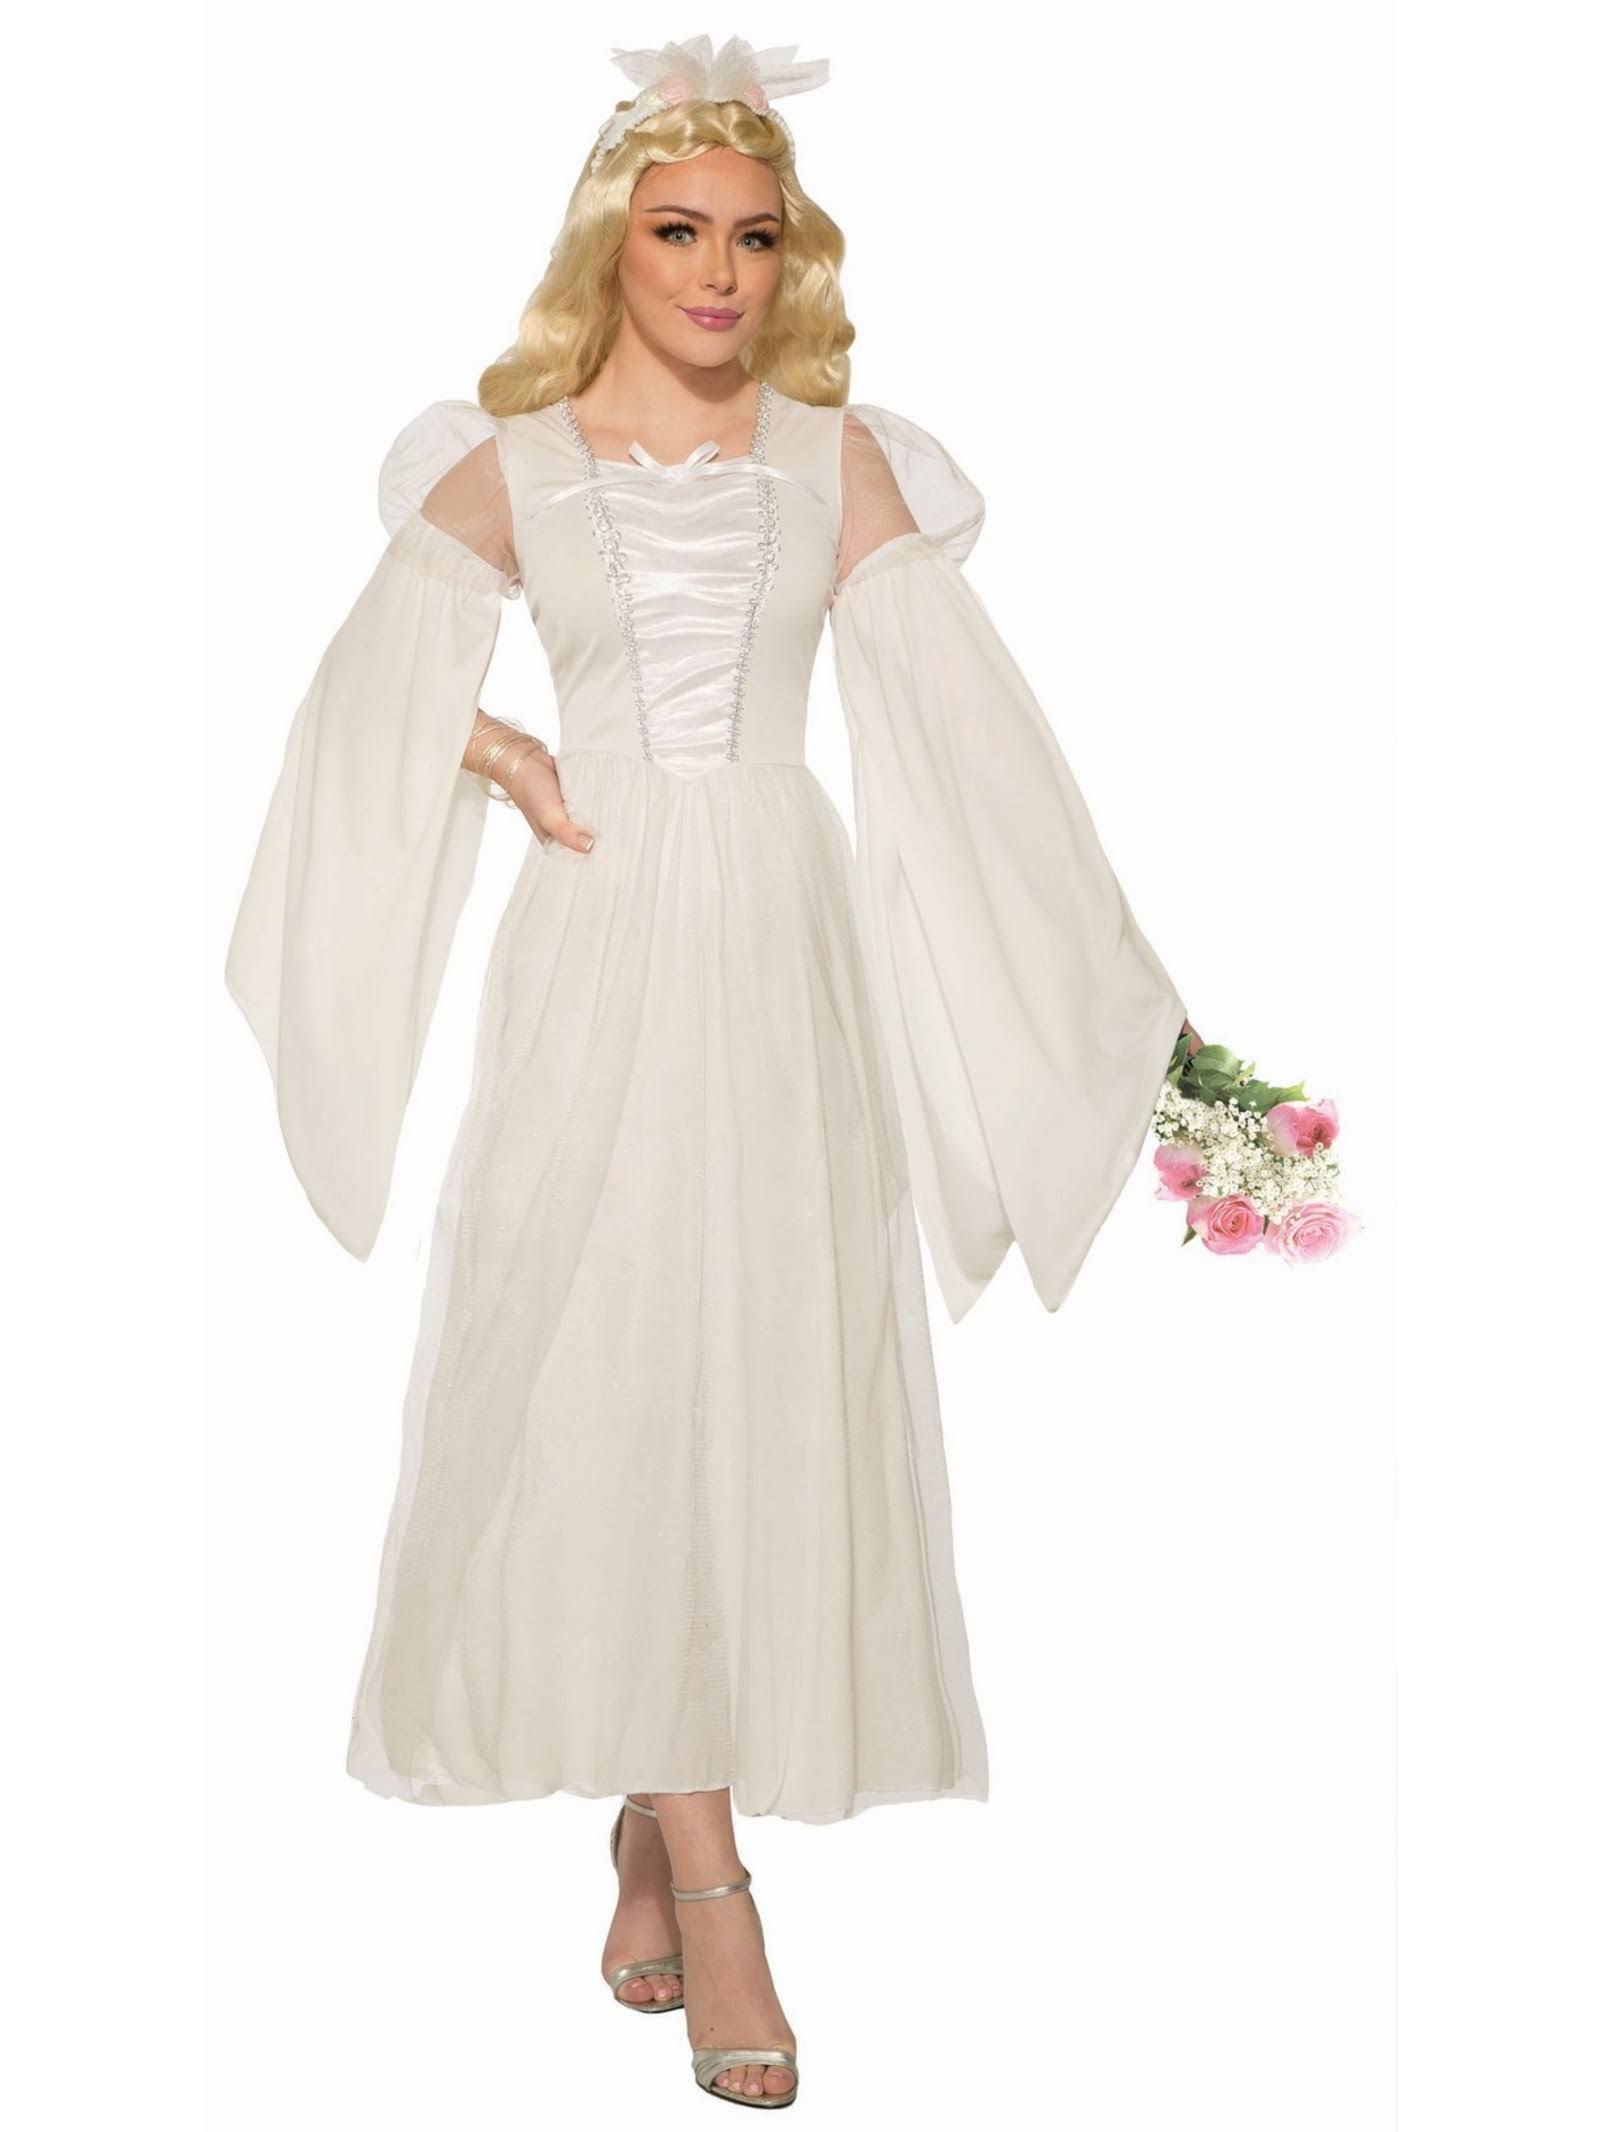 Renaissance Bride Adult Costume - Size 6-14